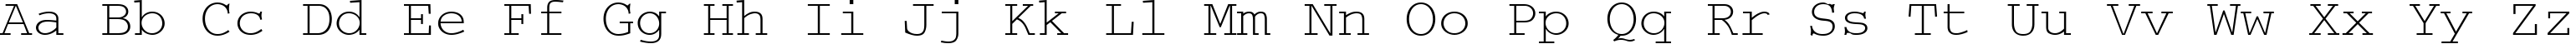 Пример написания английского алфавита шрифтом CourierCyrillic